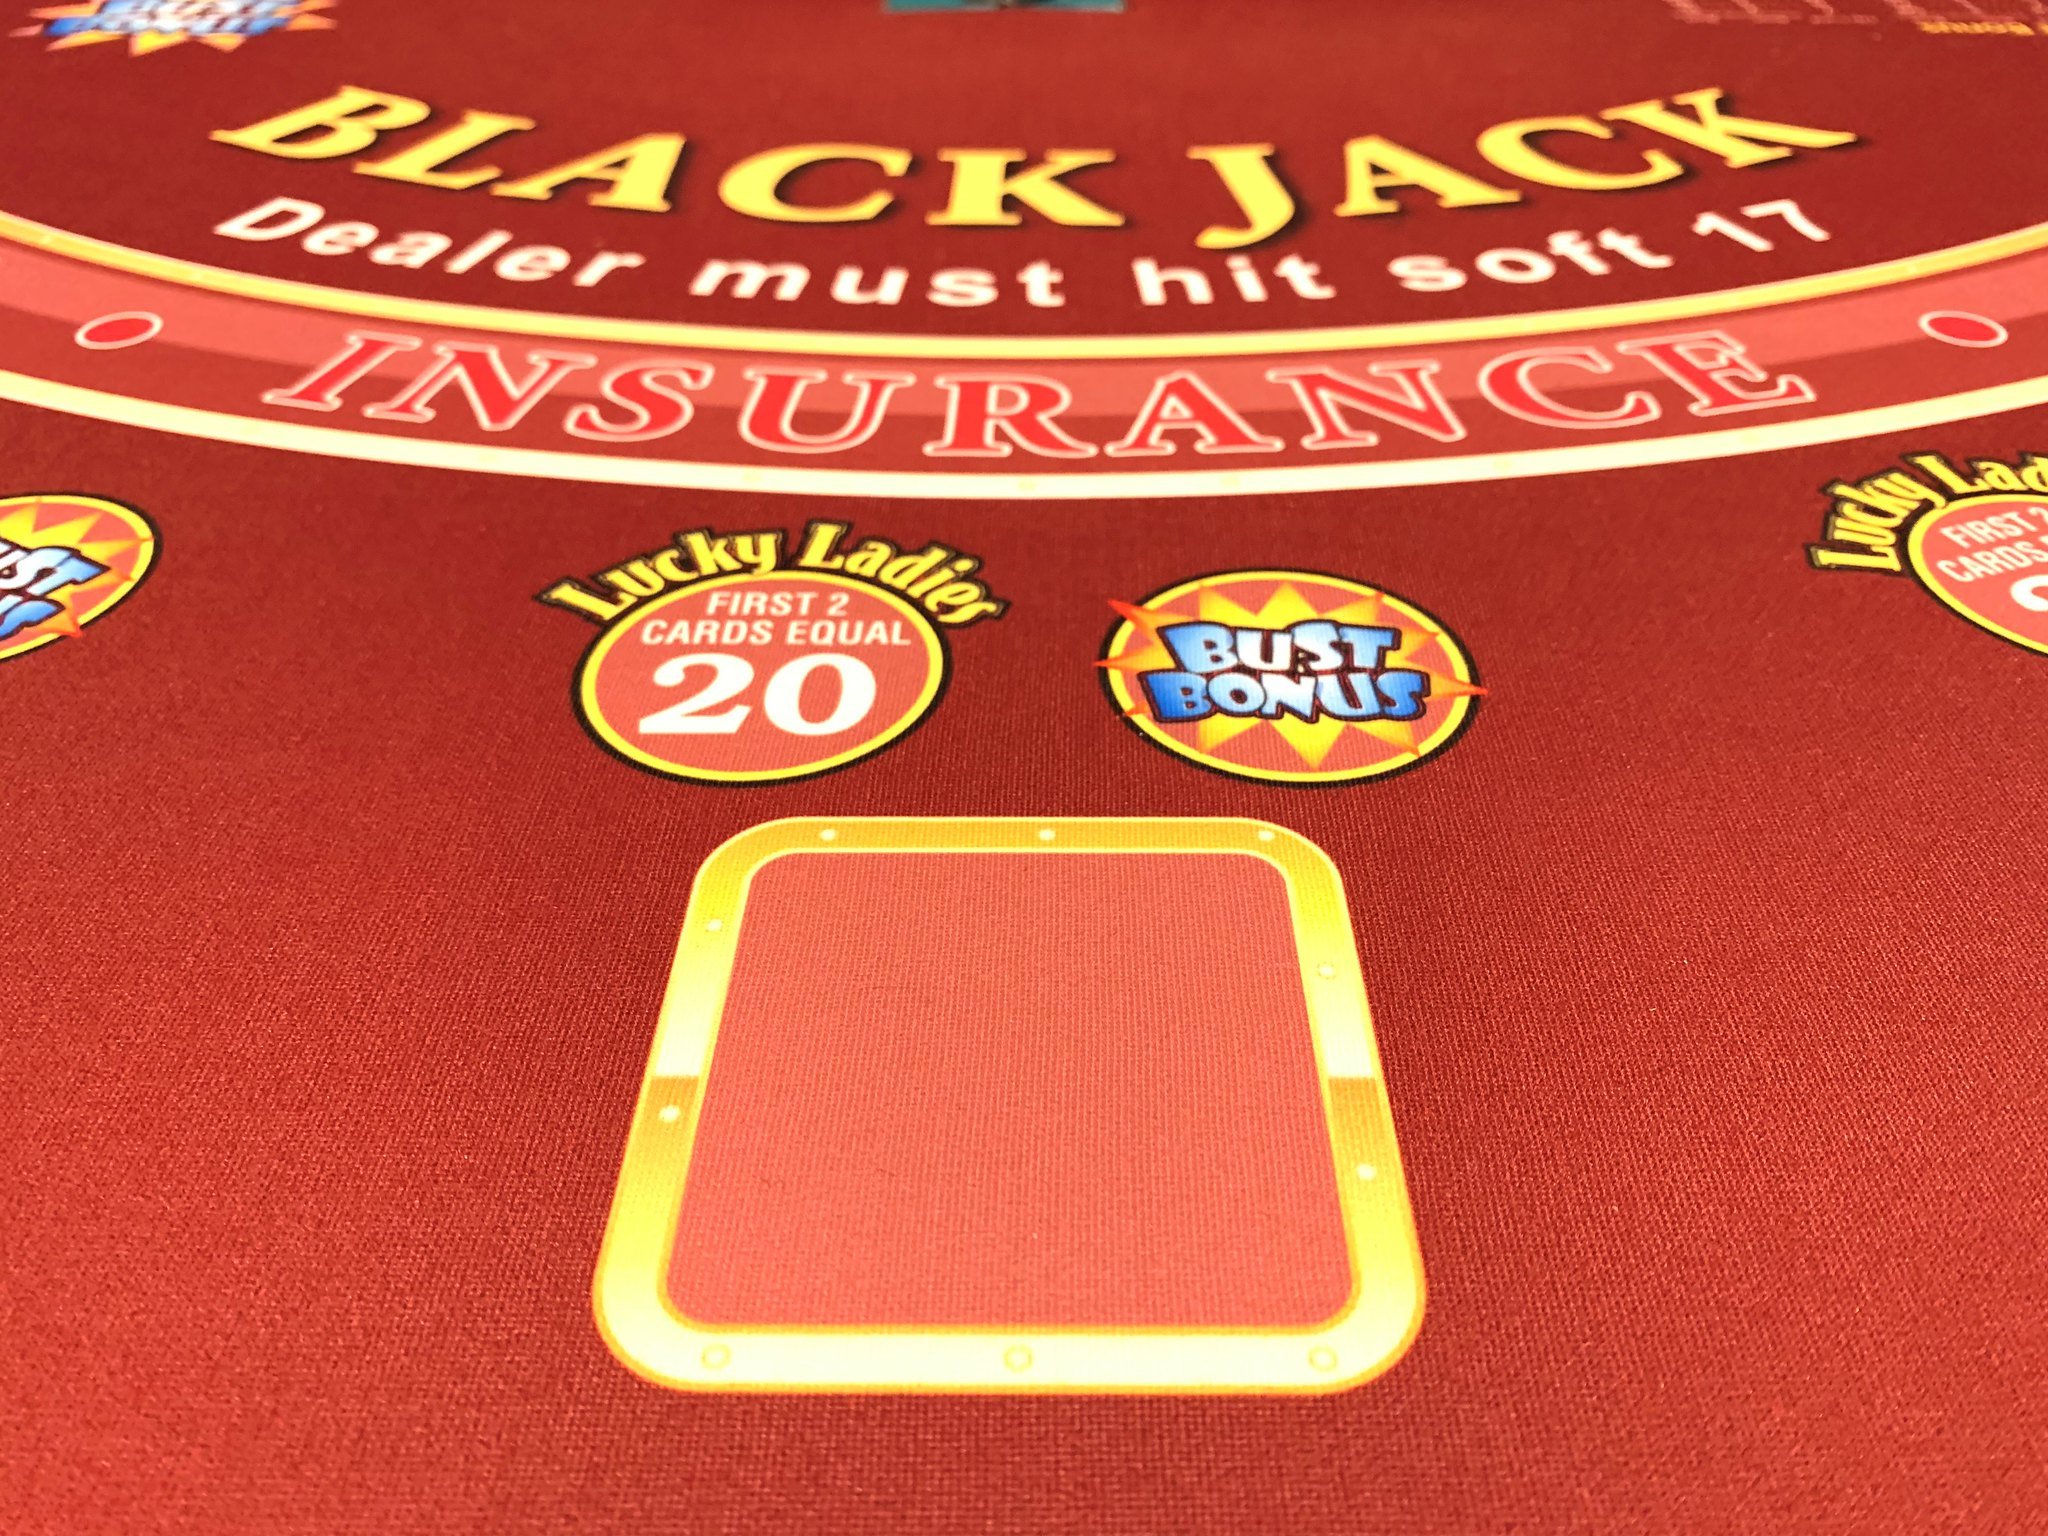 Black Jack Tisch